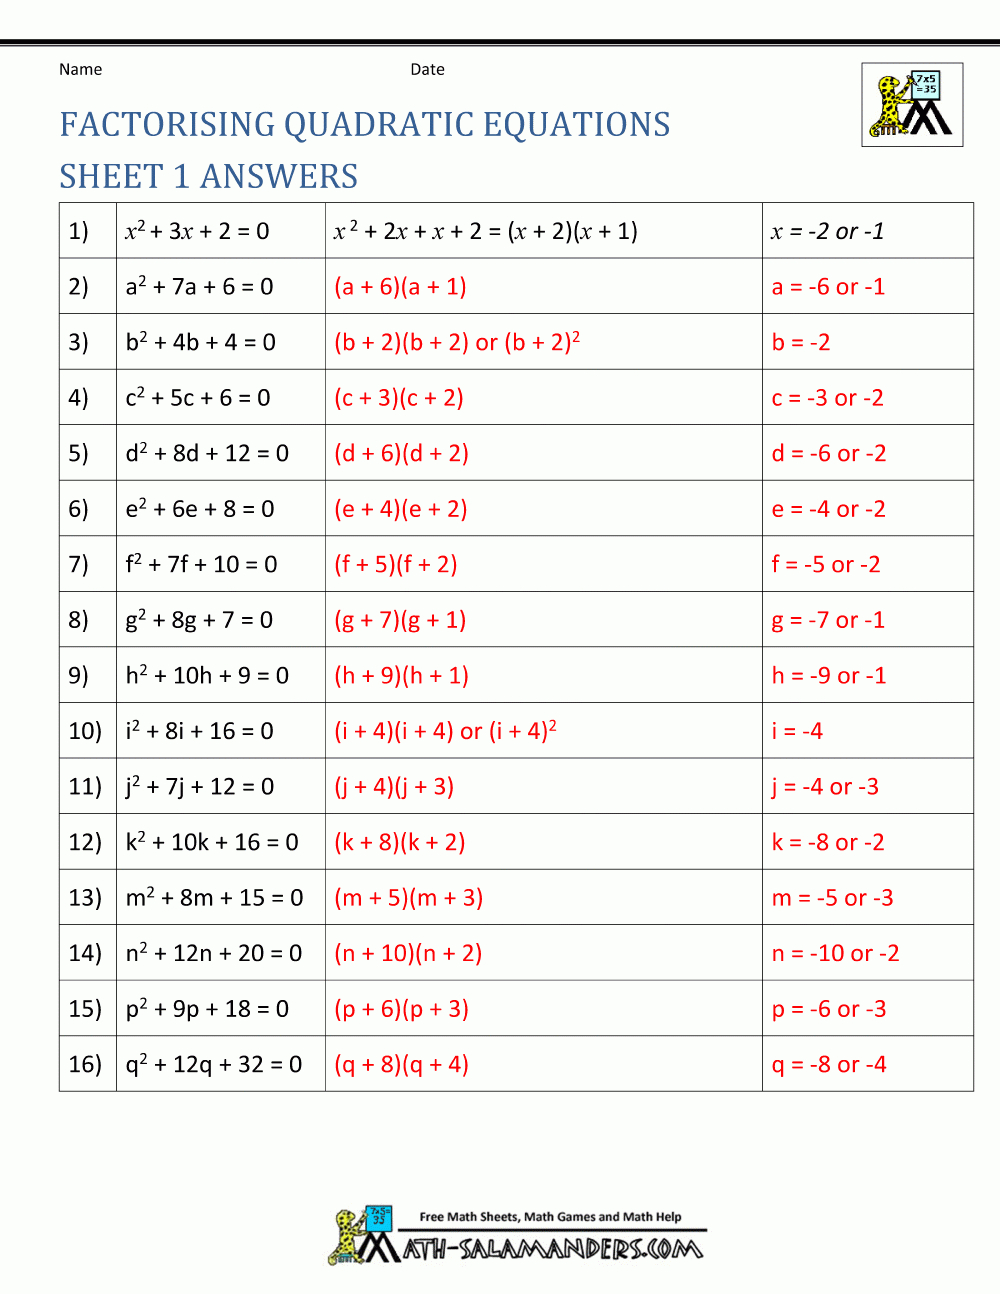 Factoring Quadratic Equations And Solving Quadratic Equations Worksheet